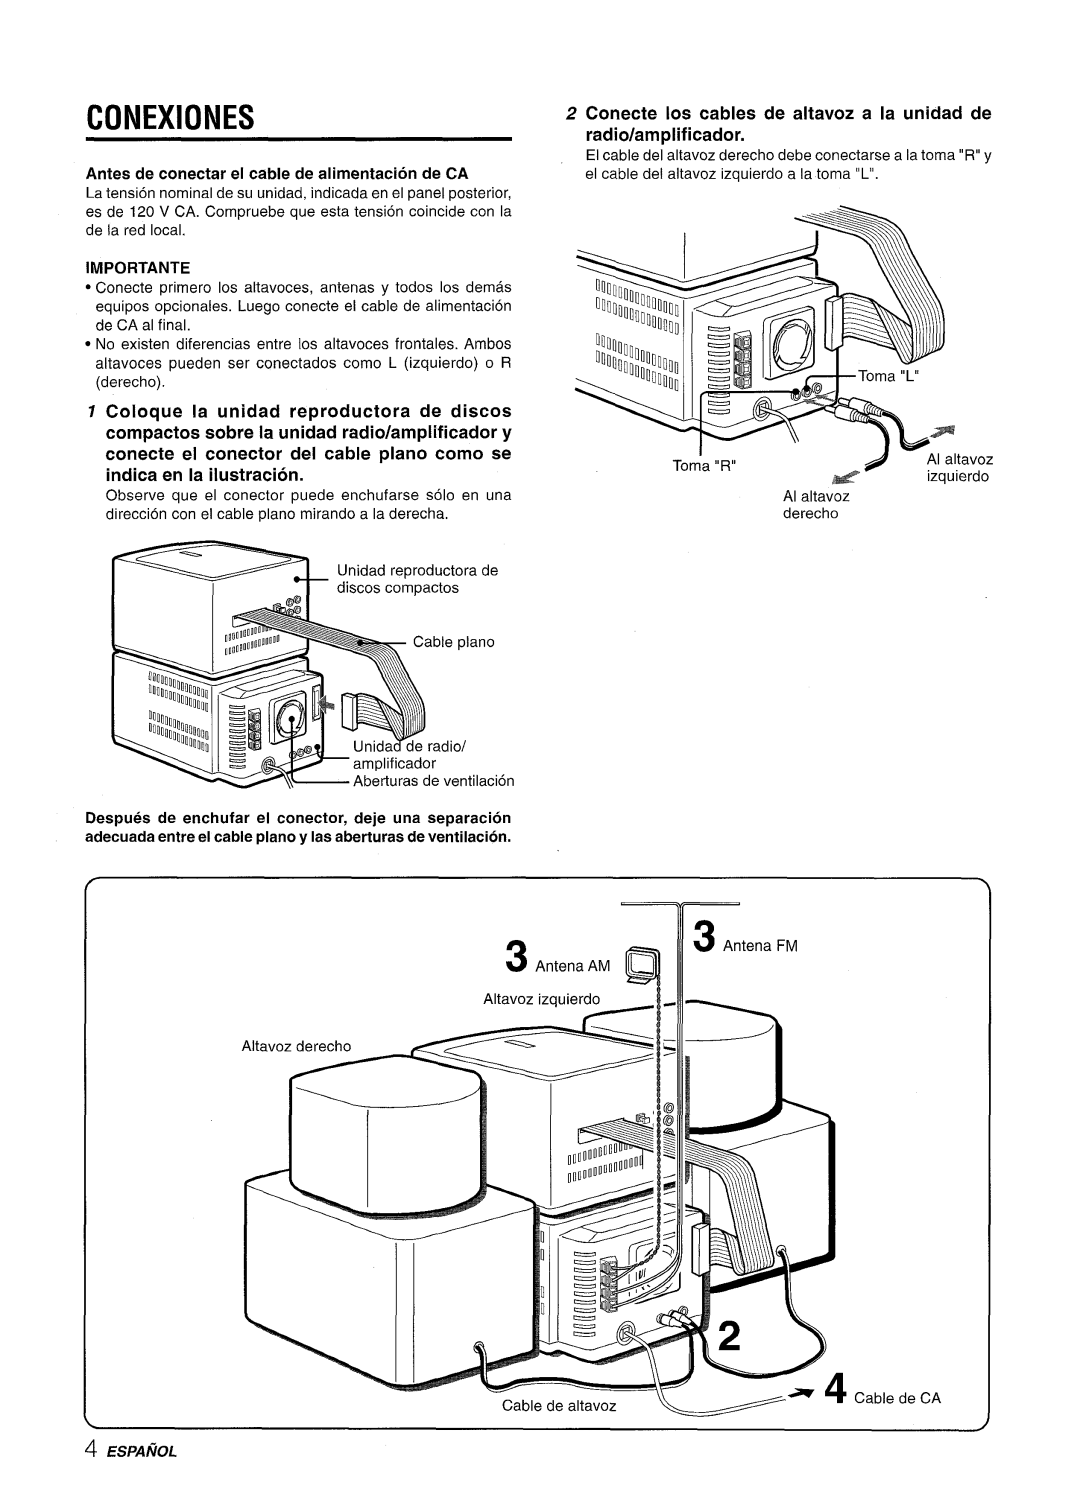 Aiwa XR-M70 manual Conexiones, Conecte Ios cables de altavoz a la unidad de radio/am plificador, Importante, Espanol 